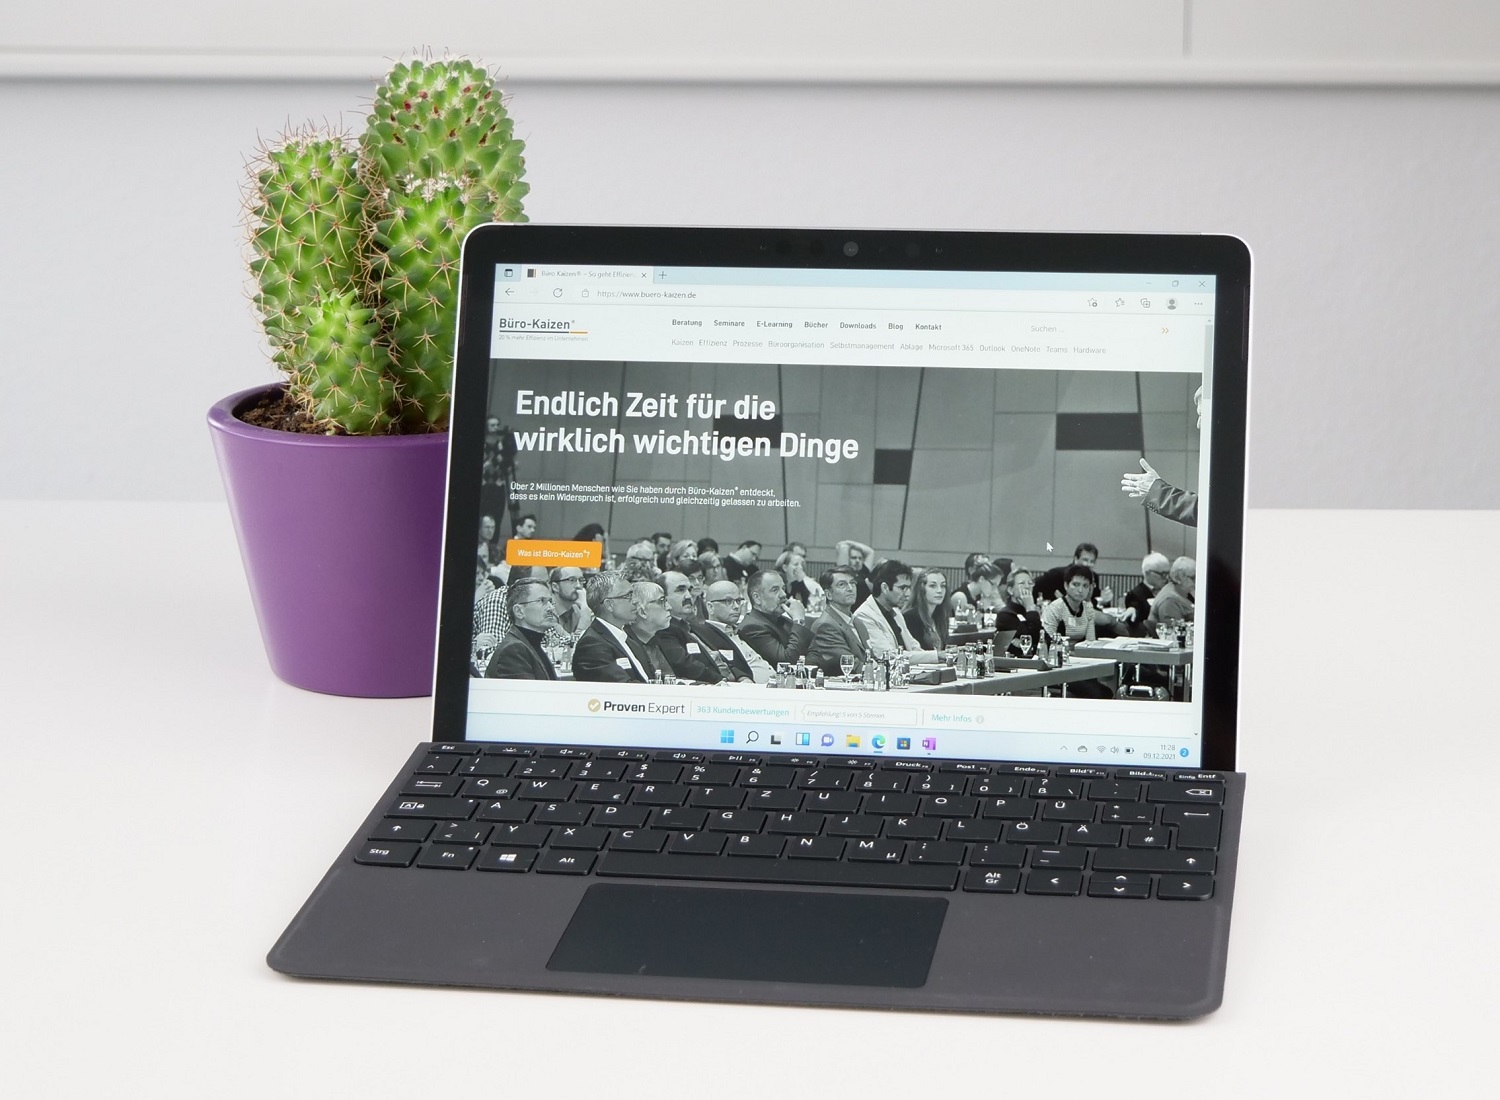 Das Surface Go ist ein 2-in-1-Gerät, das Sie als Laptop sowie als Tablet verwenden können.